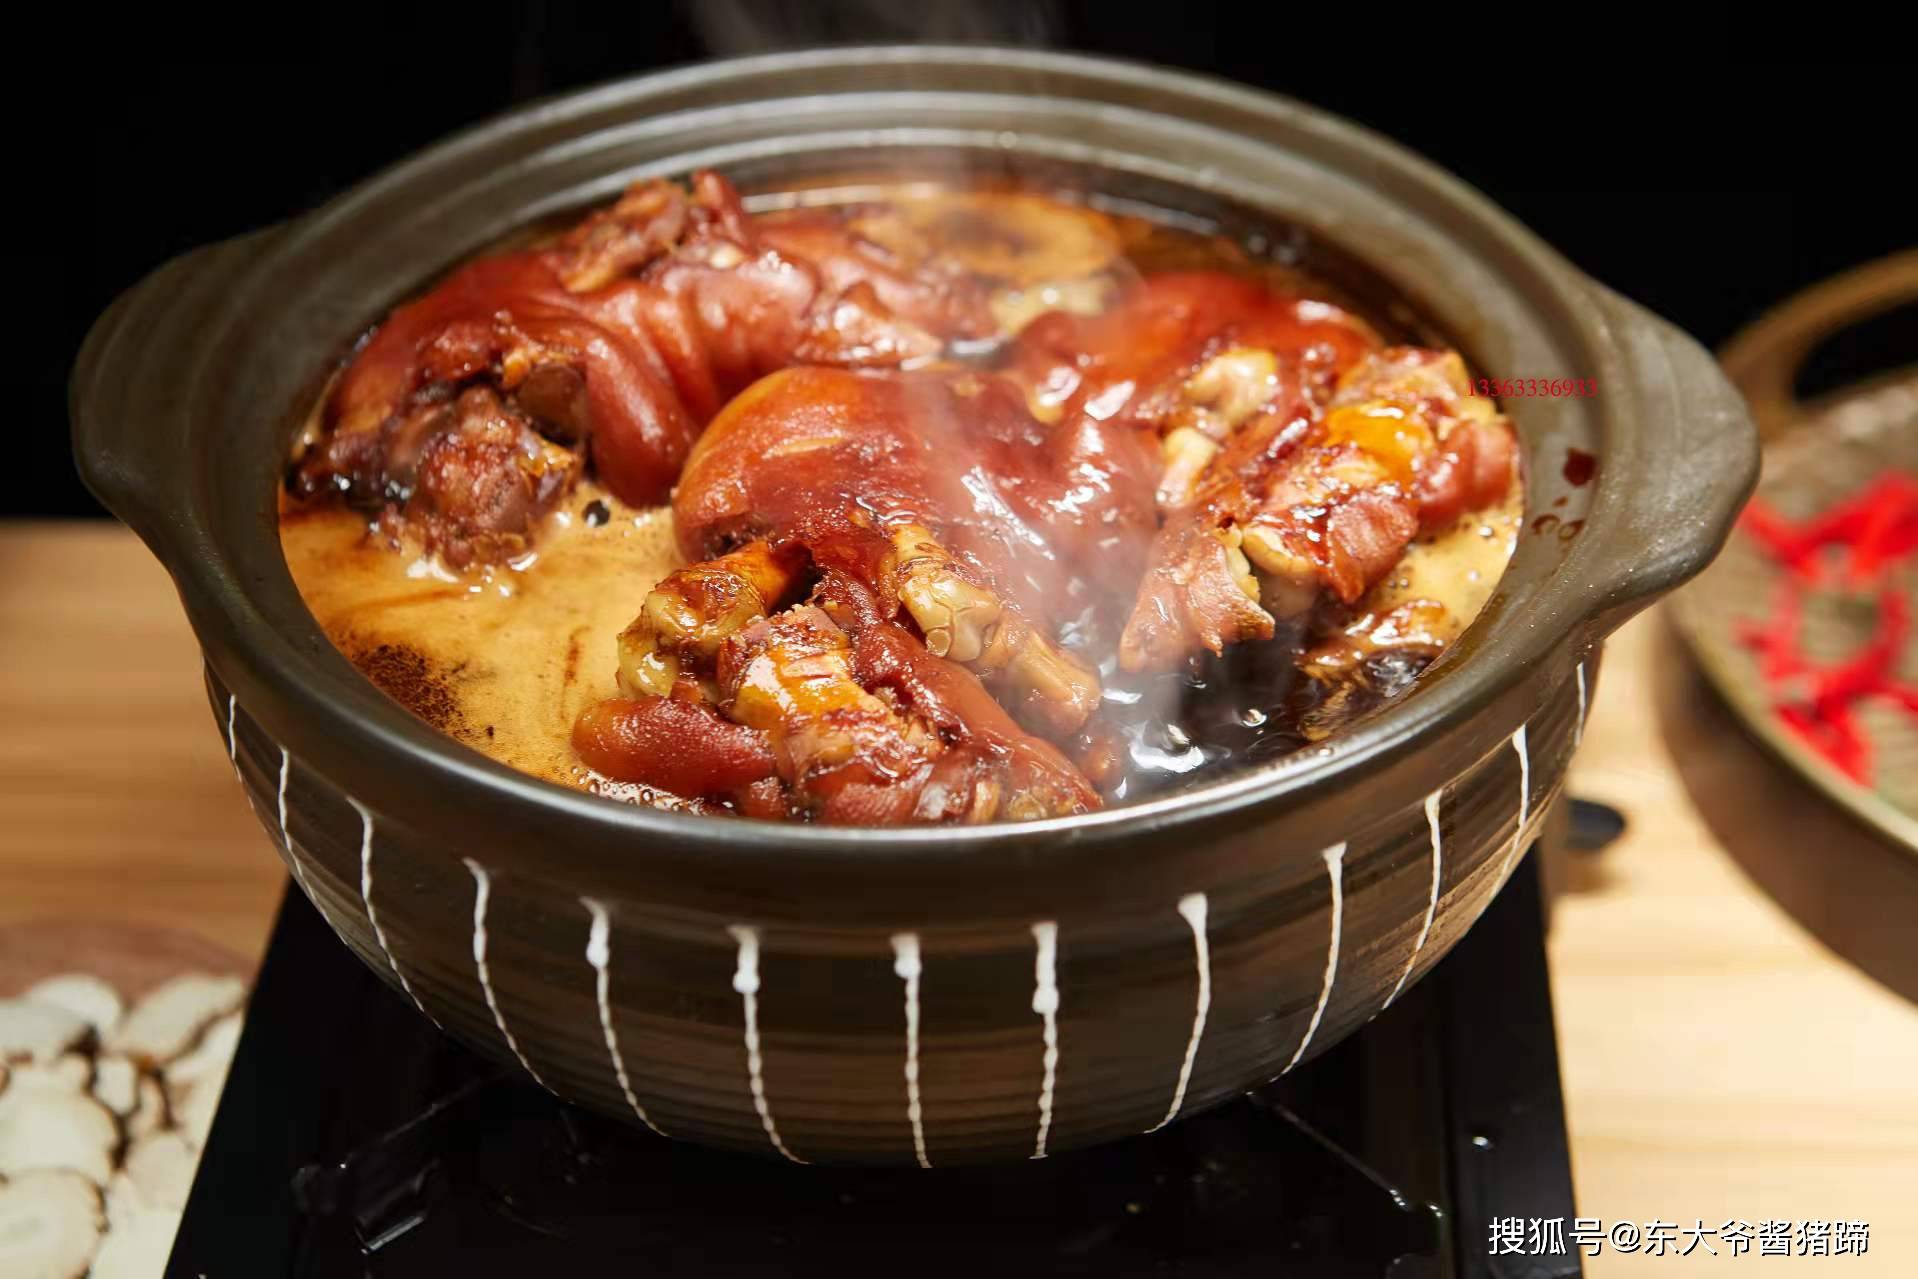 老北京:东大爷老北京酱猪蹄肉与酱汁的完美融合